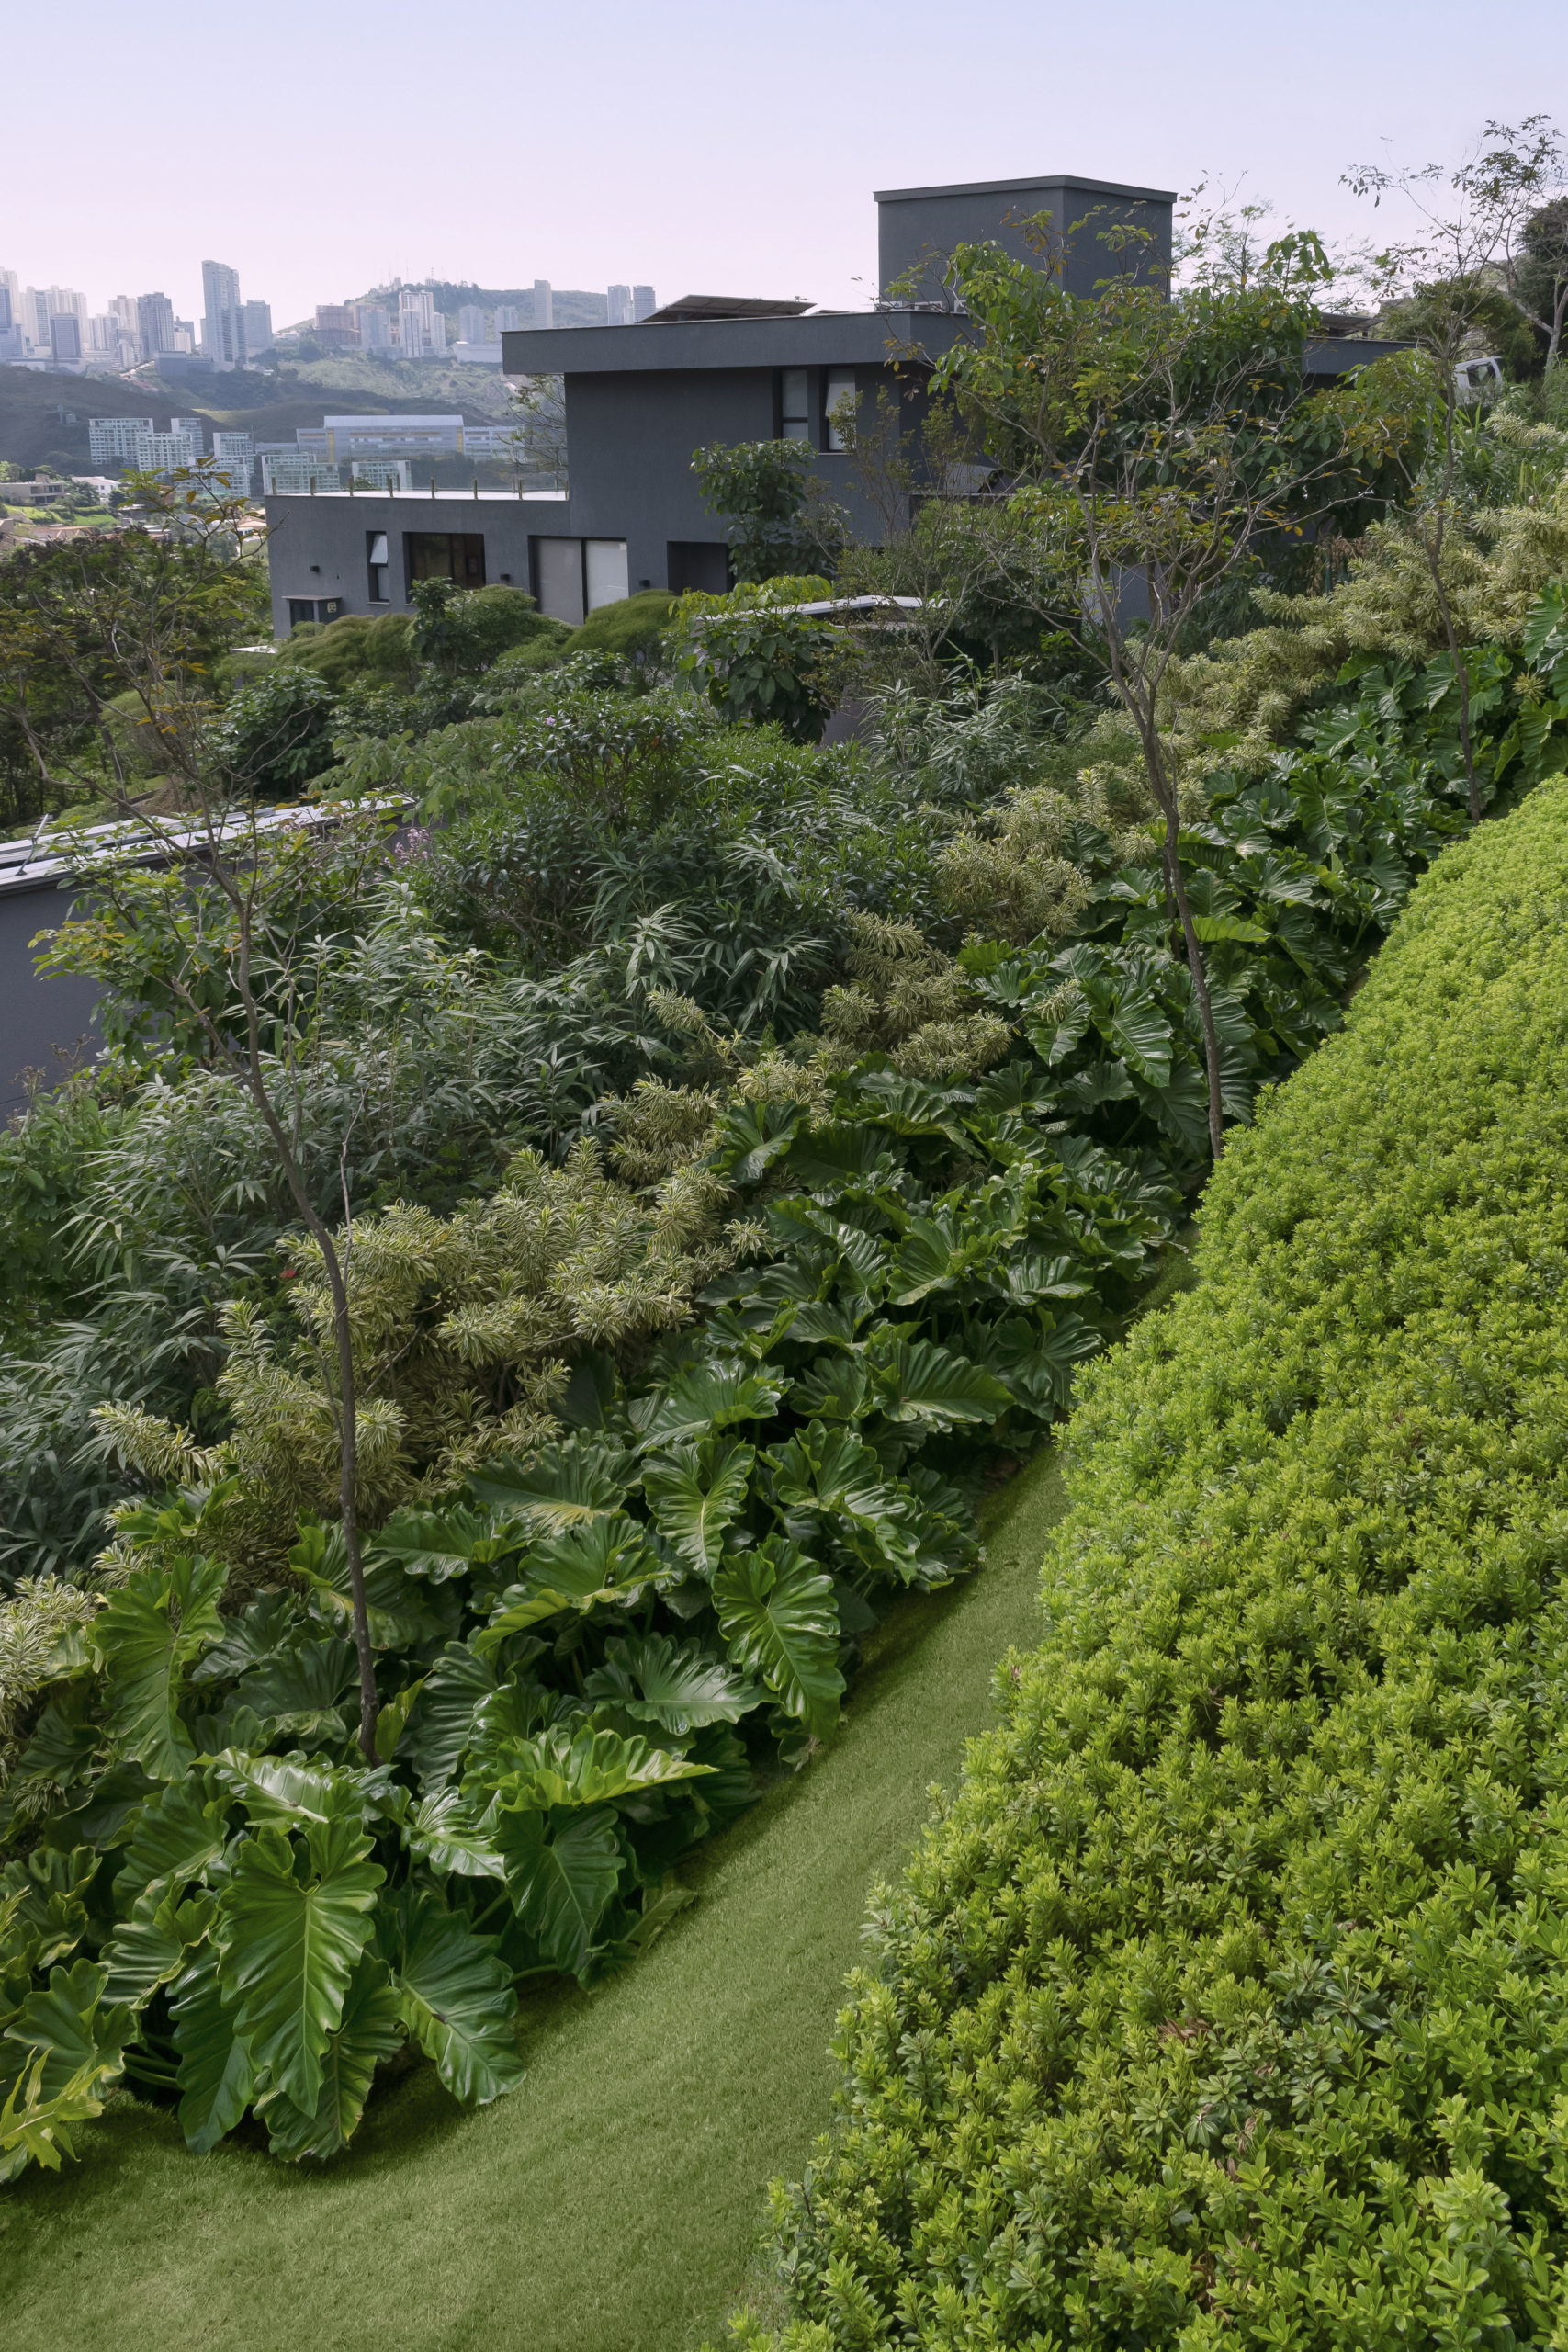 Jardim tropical e integrado à arquitetura em uma casa mineira, com o paisagismo desenvolvido em paralelo à construção, tirando partido do terreno em declive e abraçando a residência em Nova Lima, Minas Gerais.